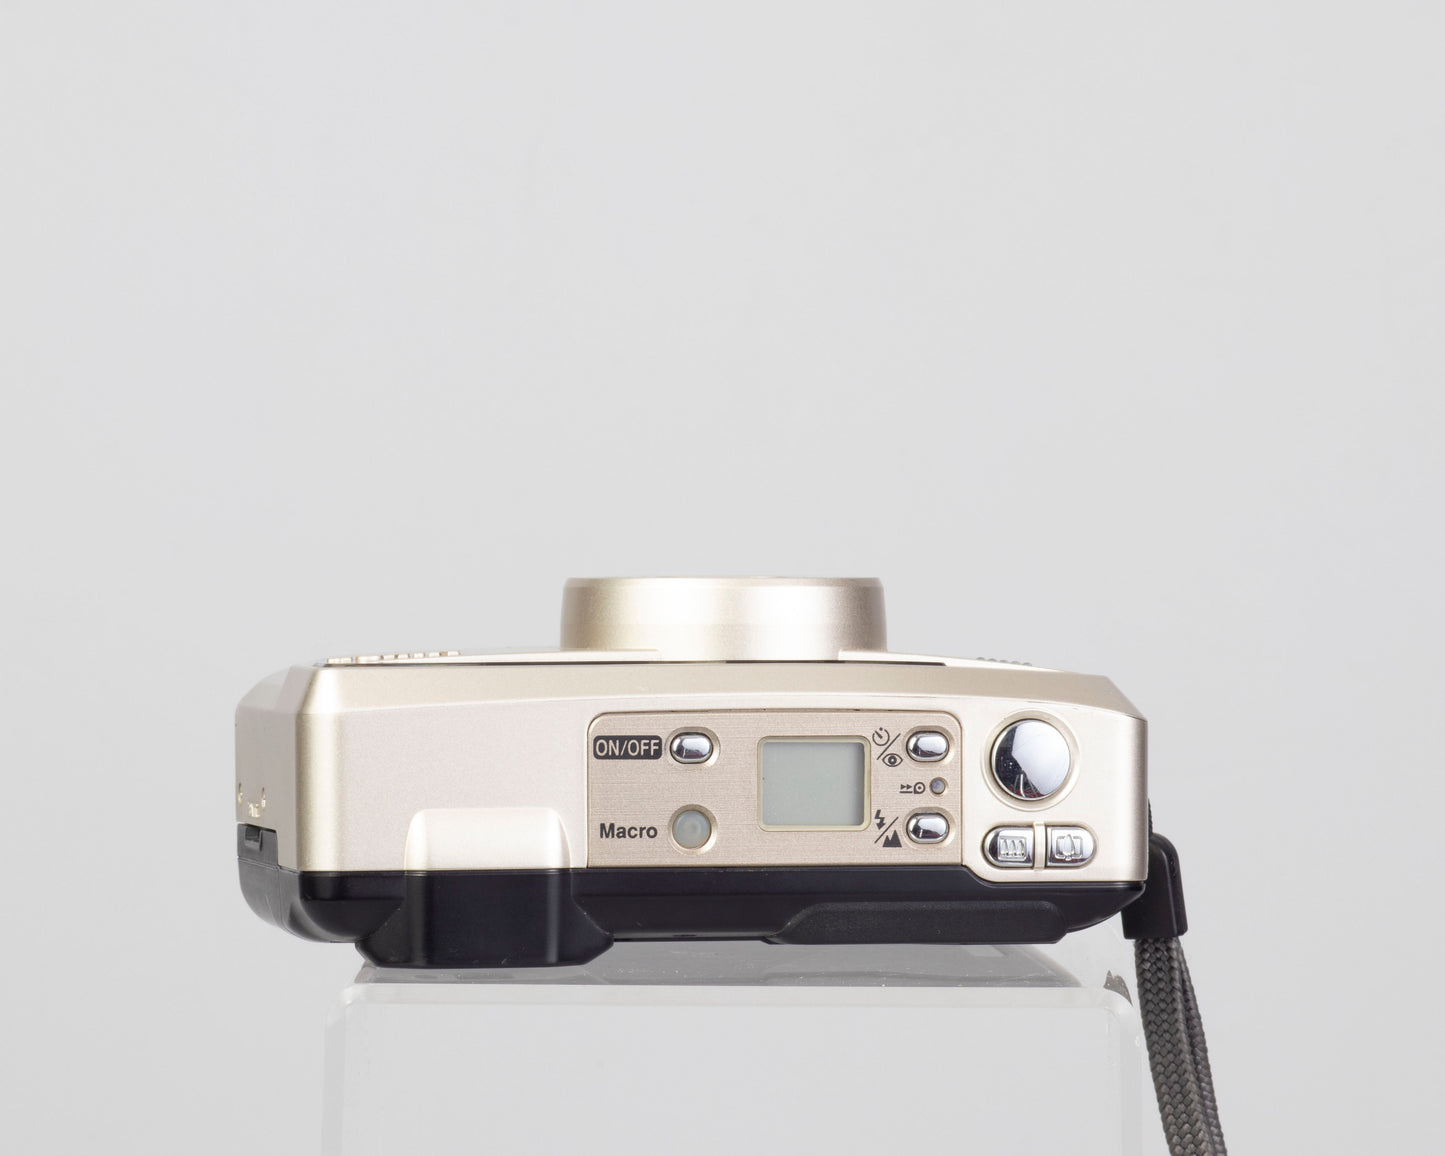 Appareil photo Nikon One Touch Zoom 90S 35 mm avec étui (série 6034585)